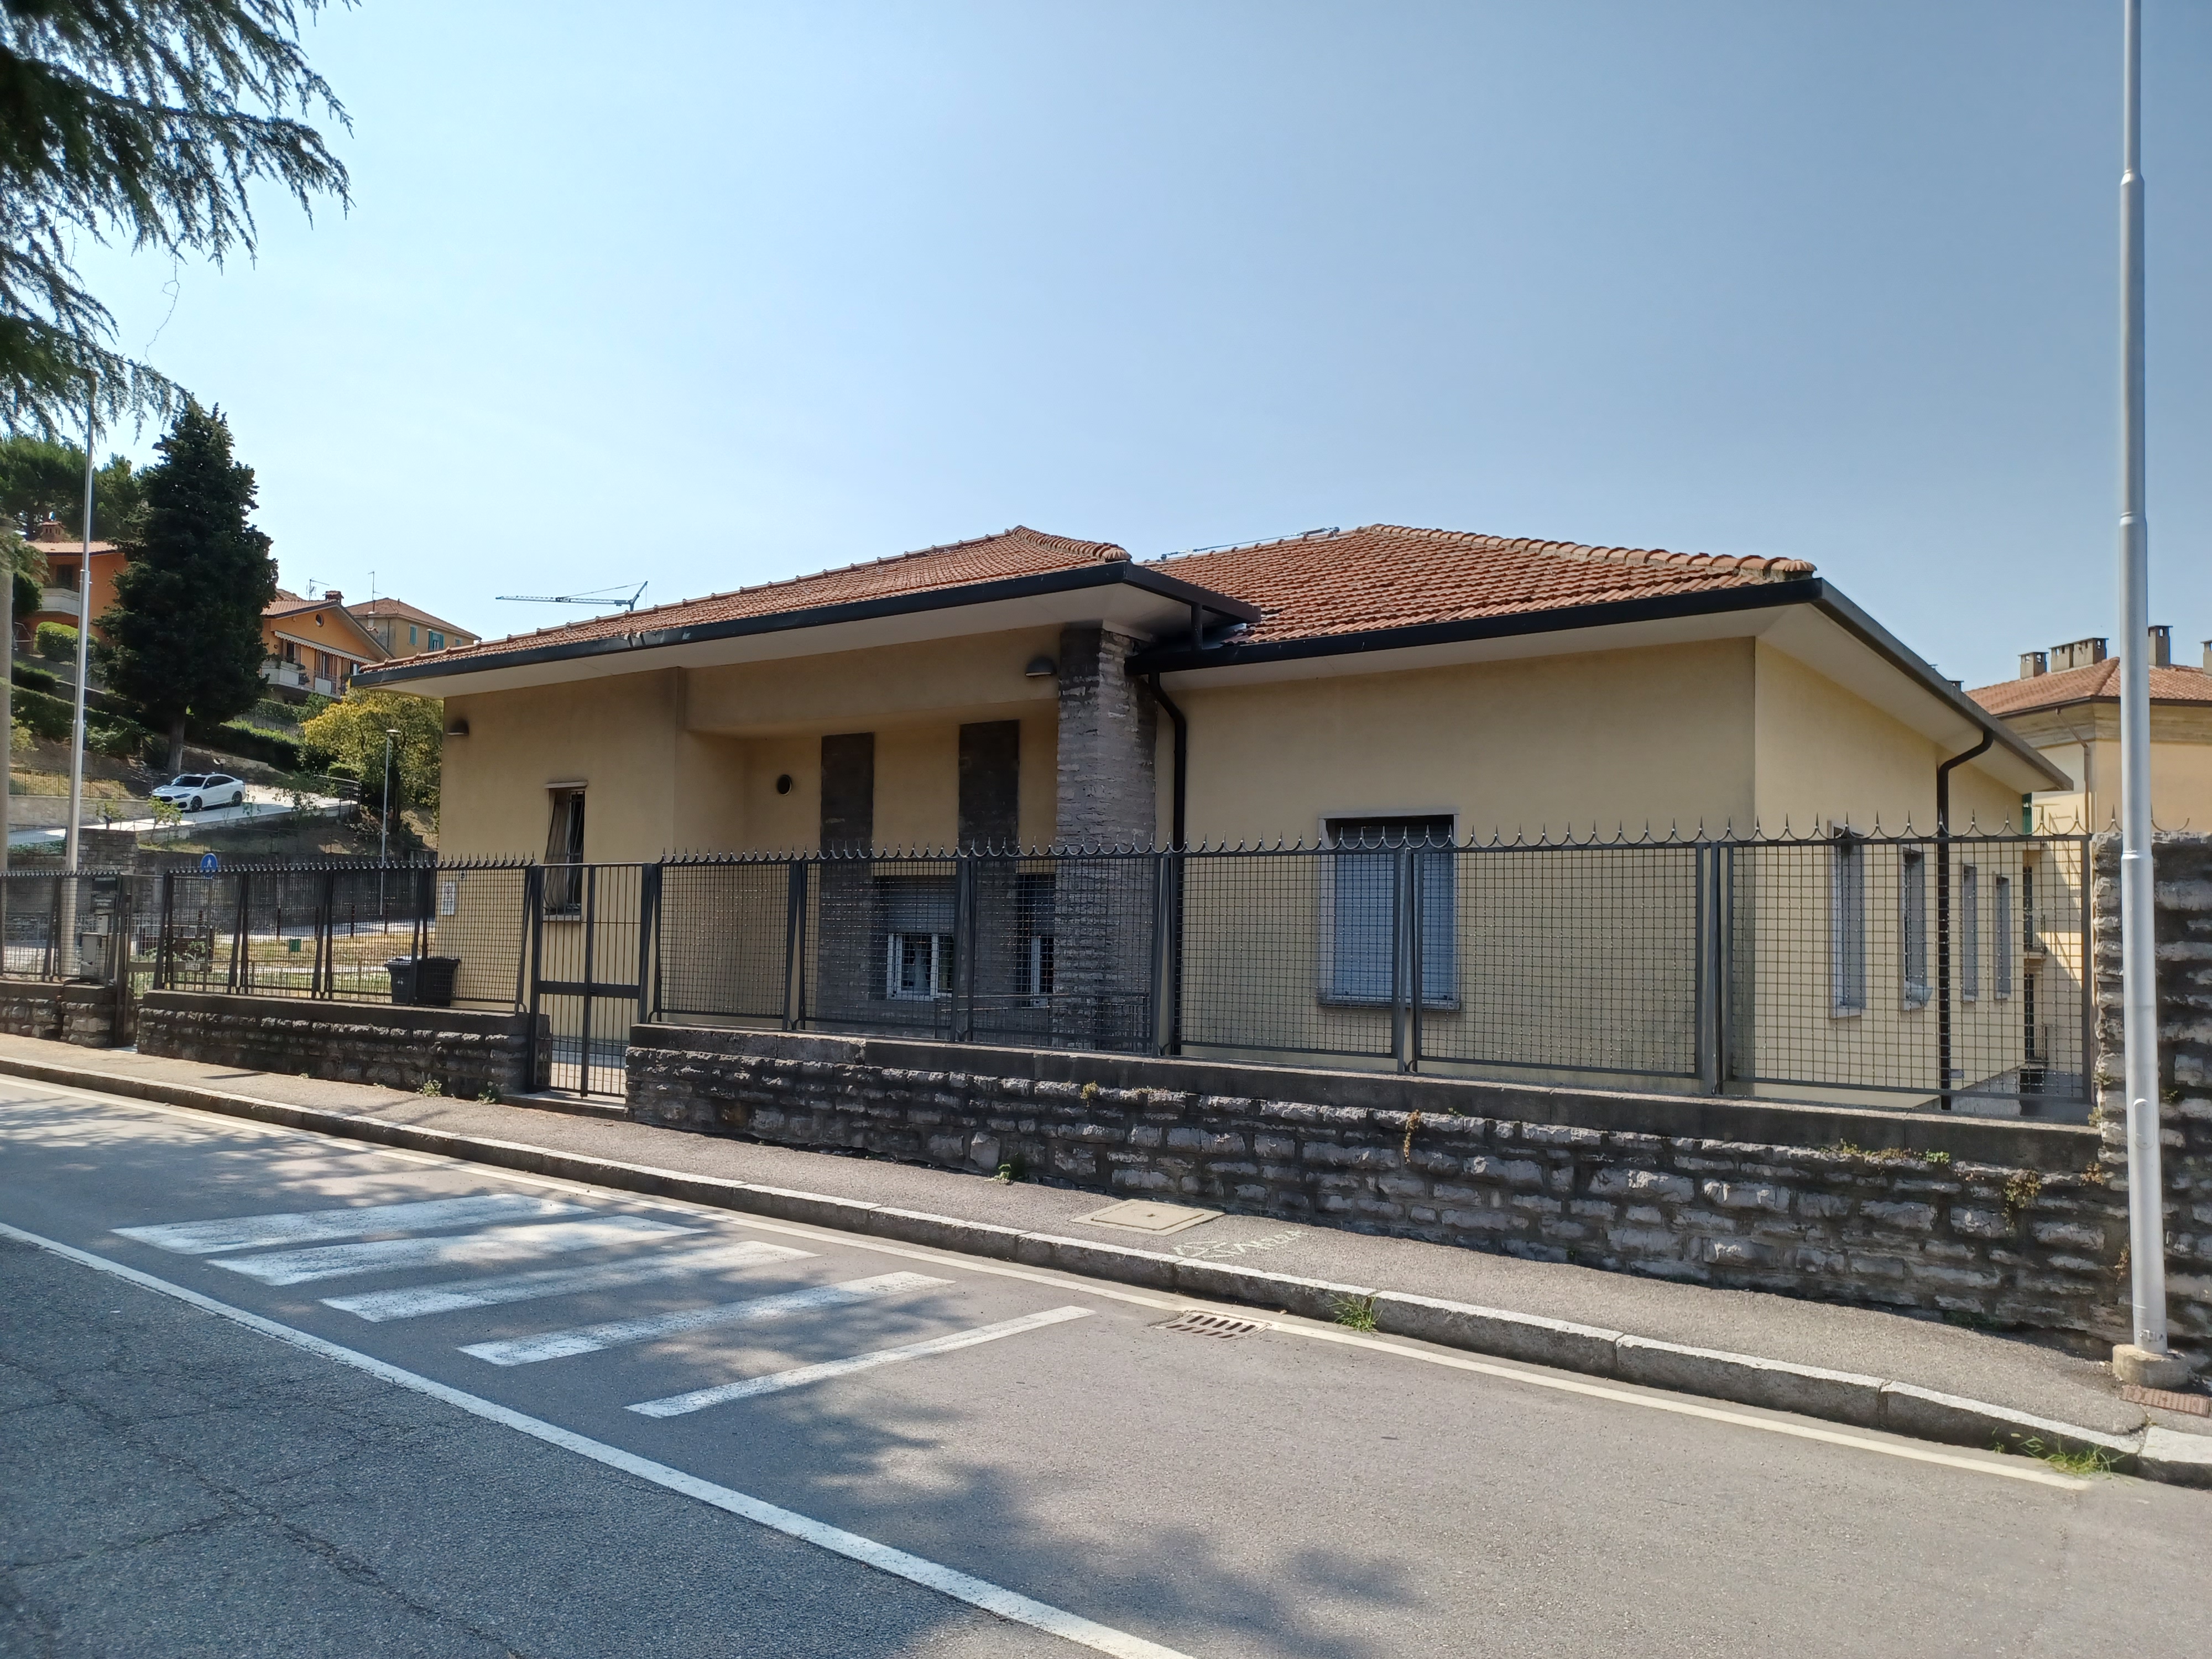 Consultorio Villa d'Almè